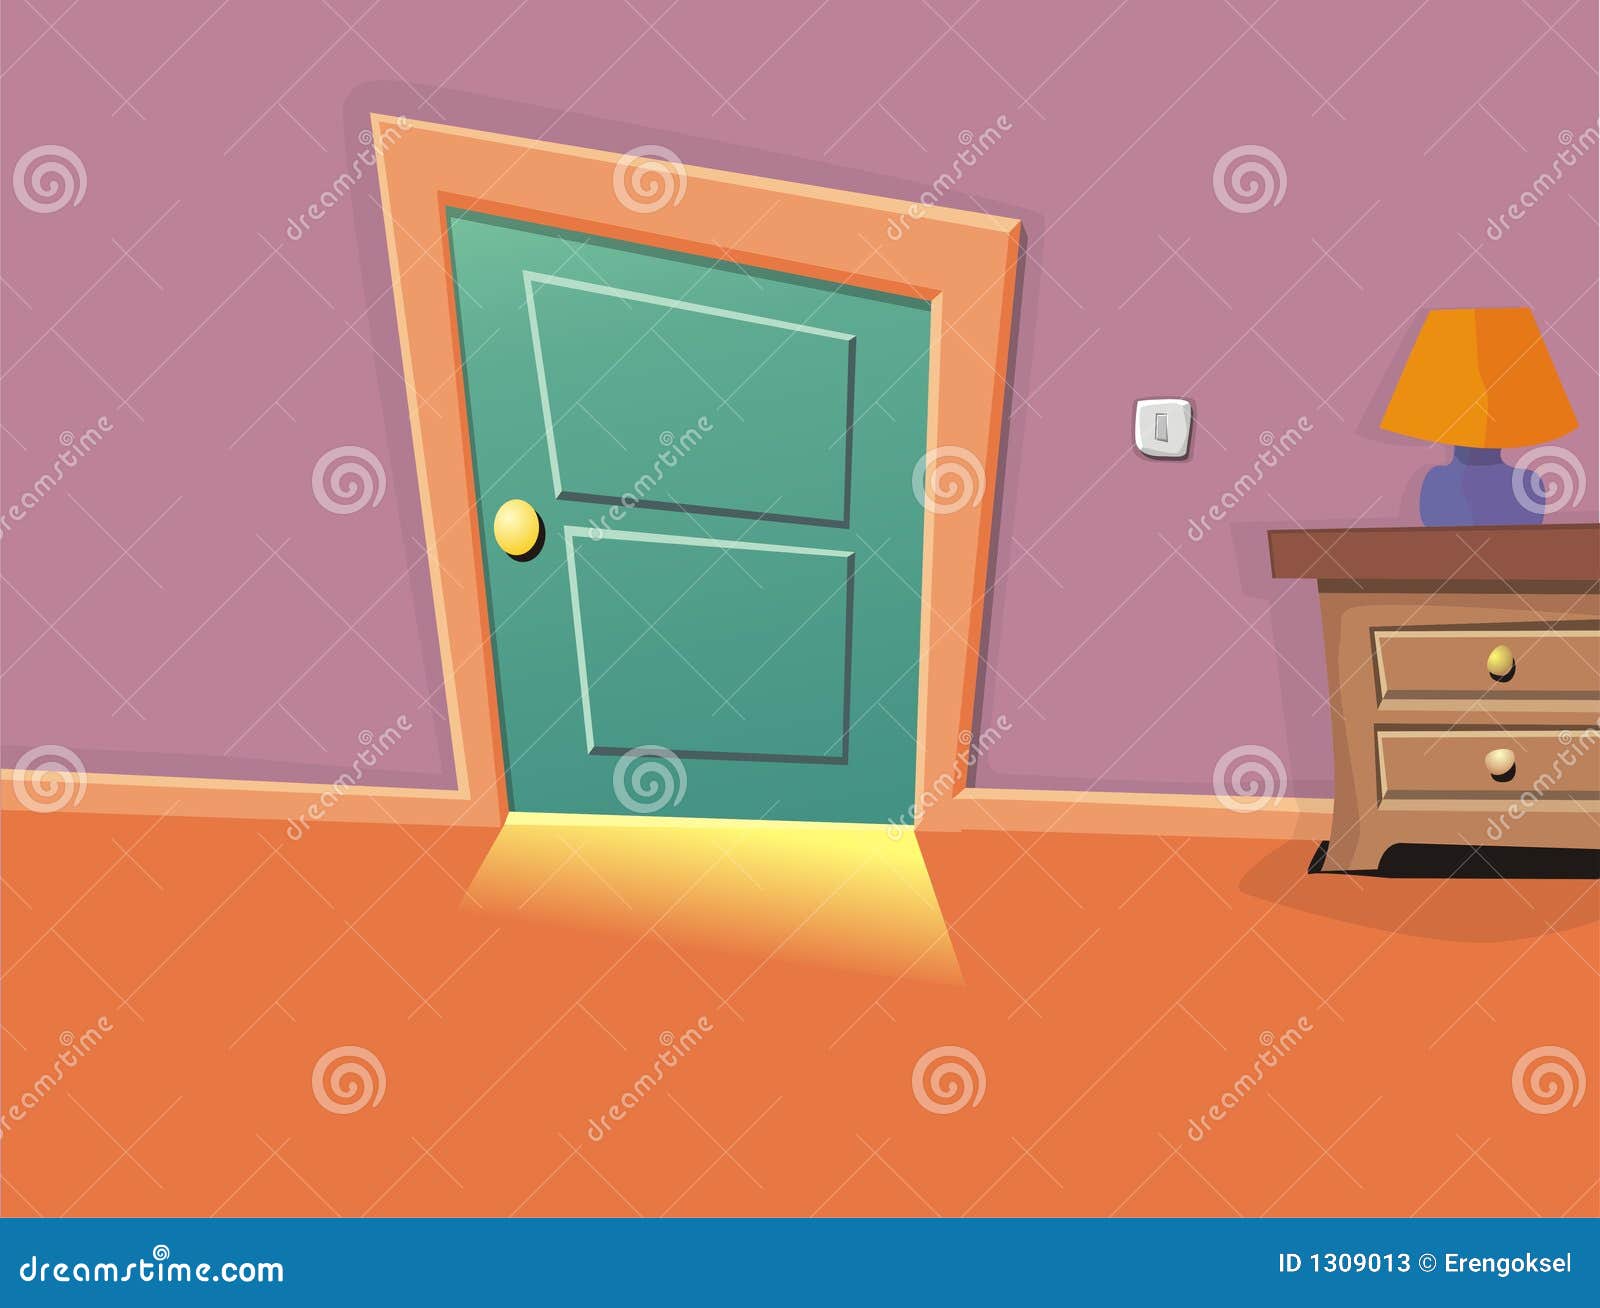 Cartoon room stock illustration. Illustration of backdrop - 1309013